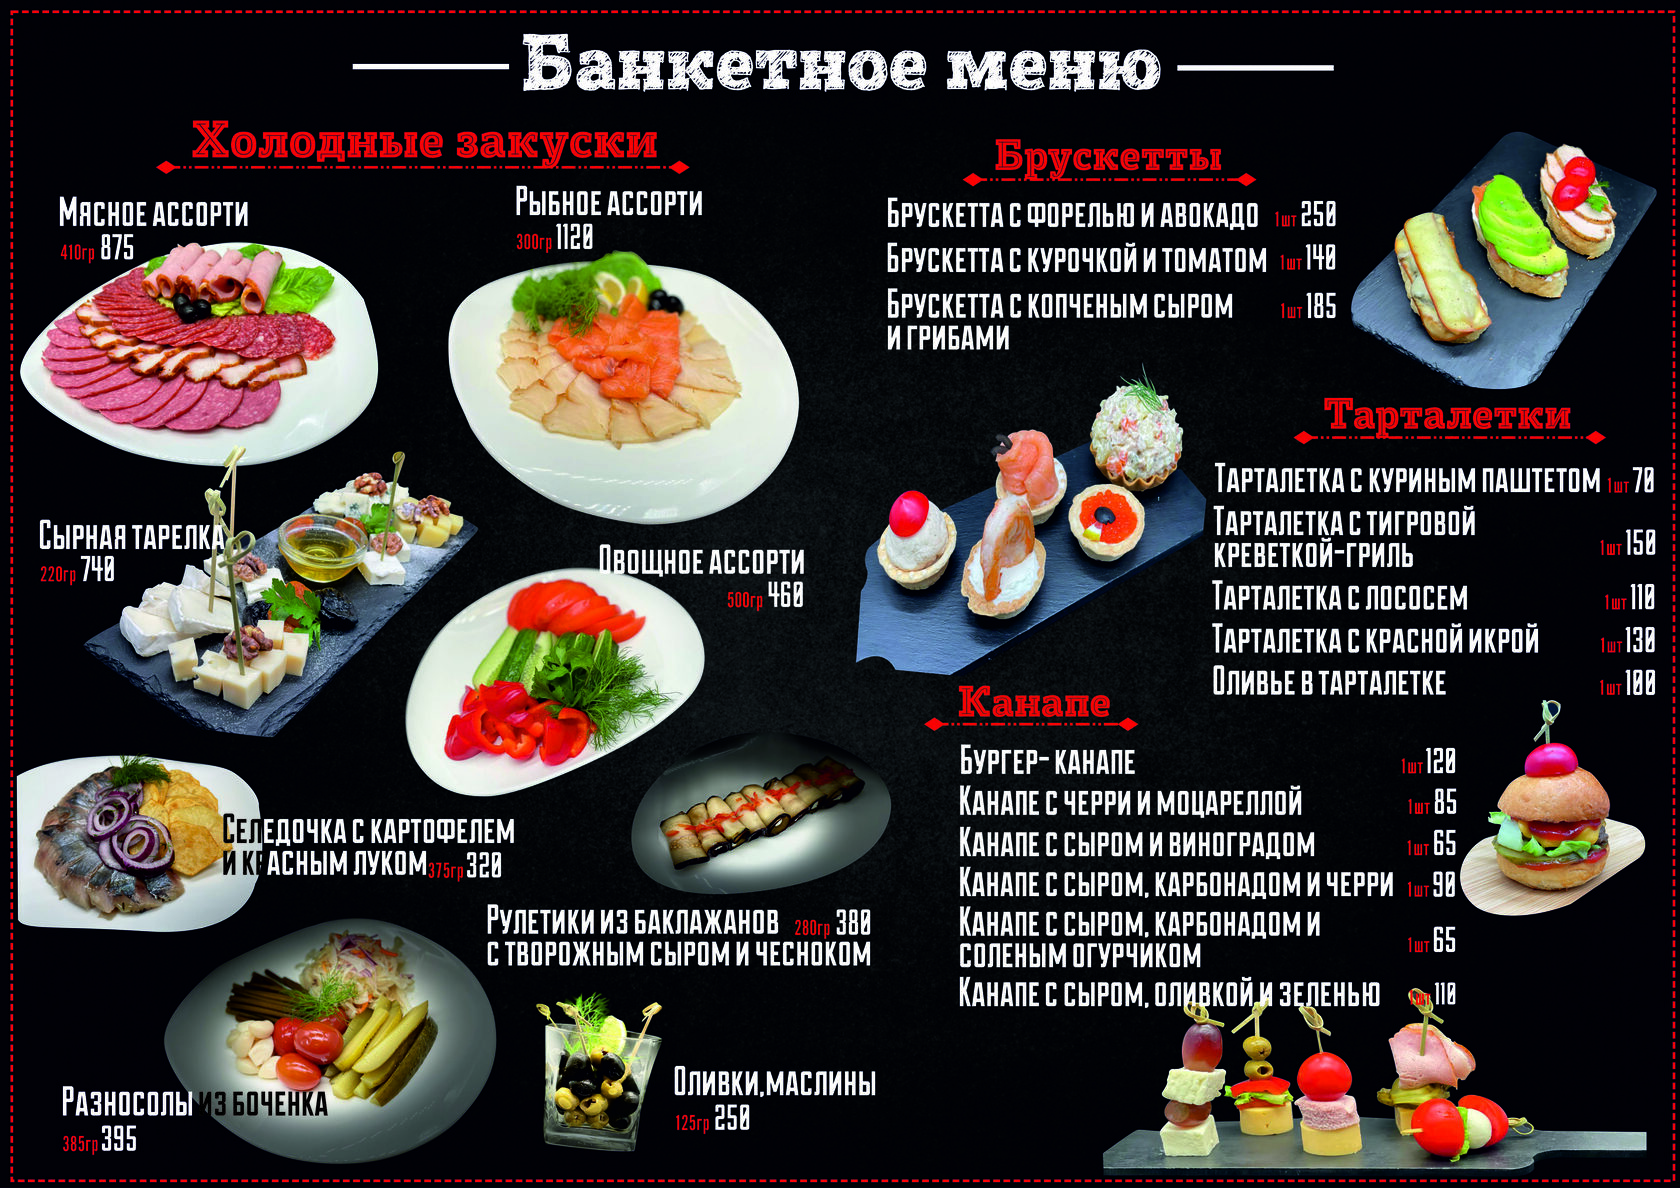 Банкетное меню на 1300 рублей